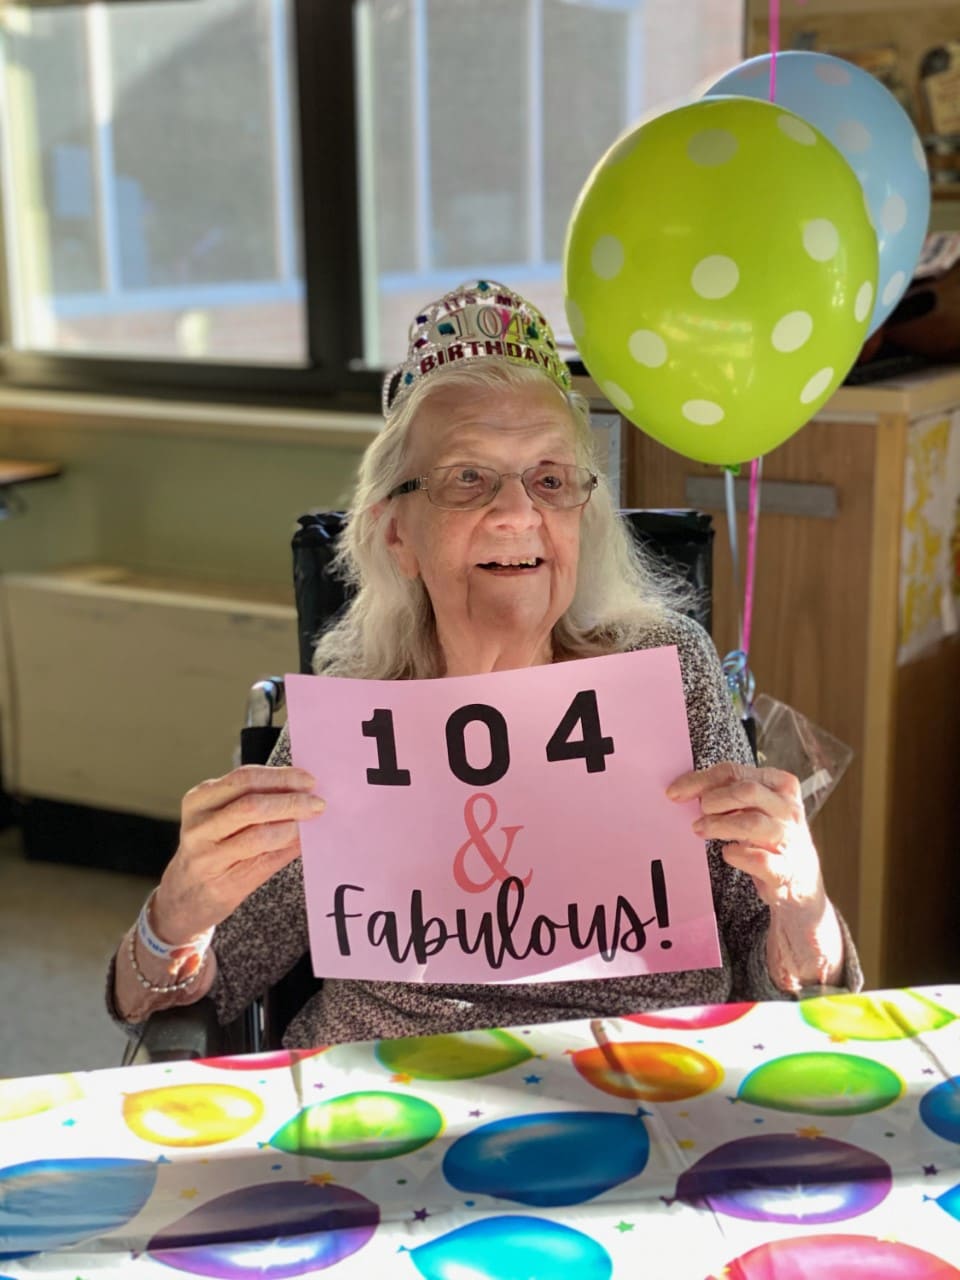 Celebrating 104 years